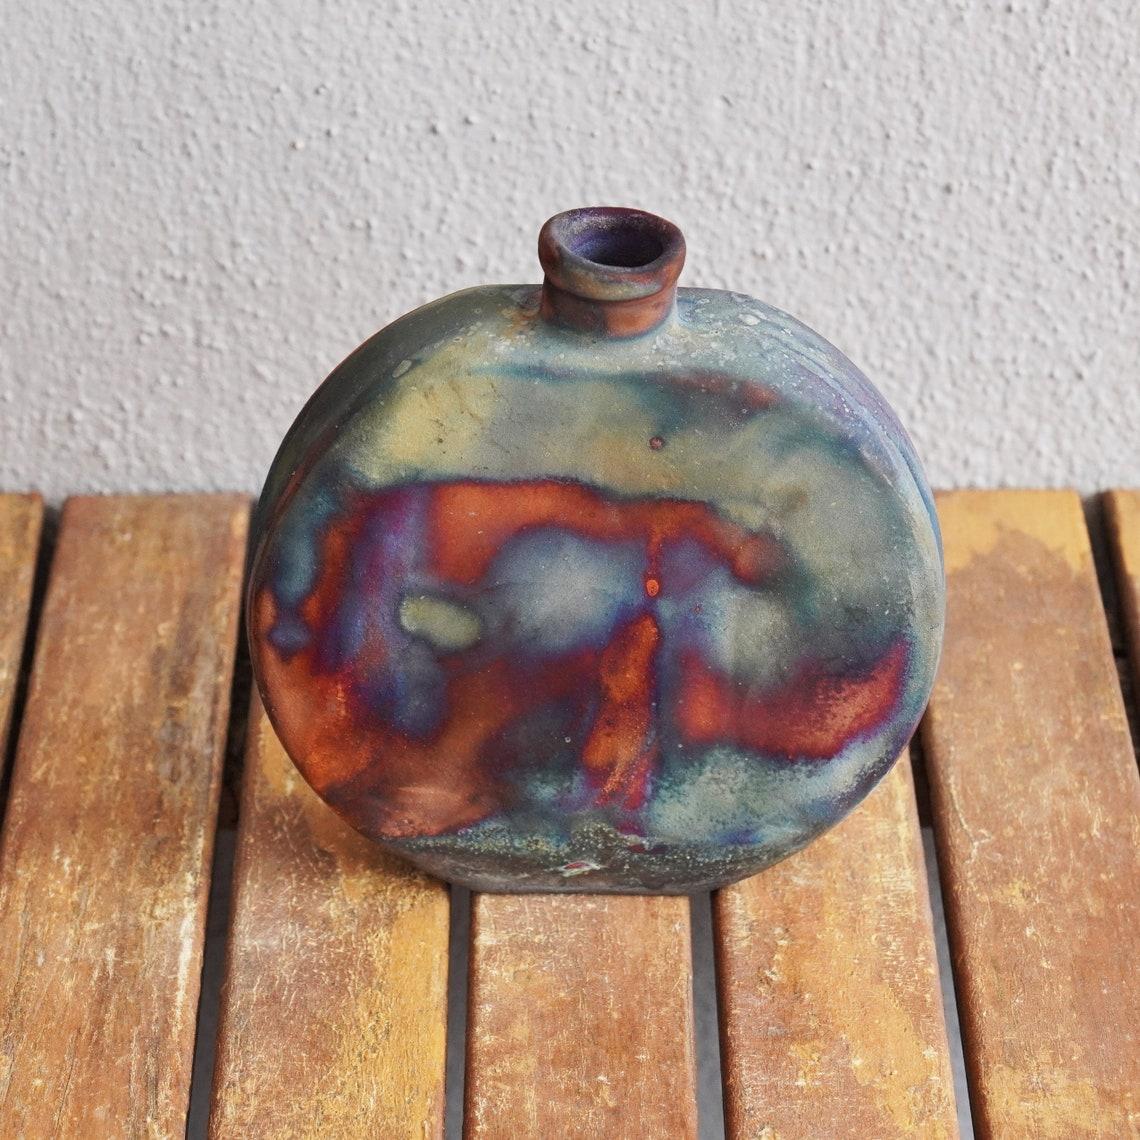 Kumo ( 雲 ) - (n) nuage

Notre vase Kumo est un vase globe aplati avec une base étroite et une bouche étroite. Sa forme contemporaine promet de s'intégrer à tous les styles d'intérieur.

Le vase Kumo se marie parfaitement avec notre vase Nozomu.